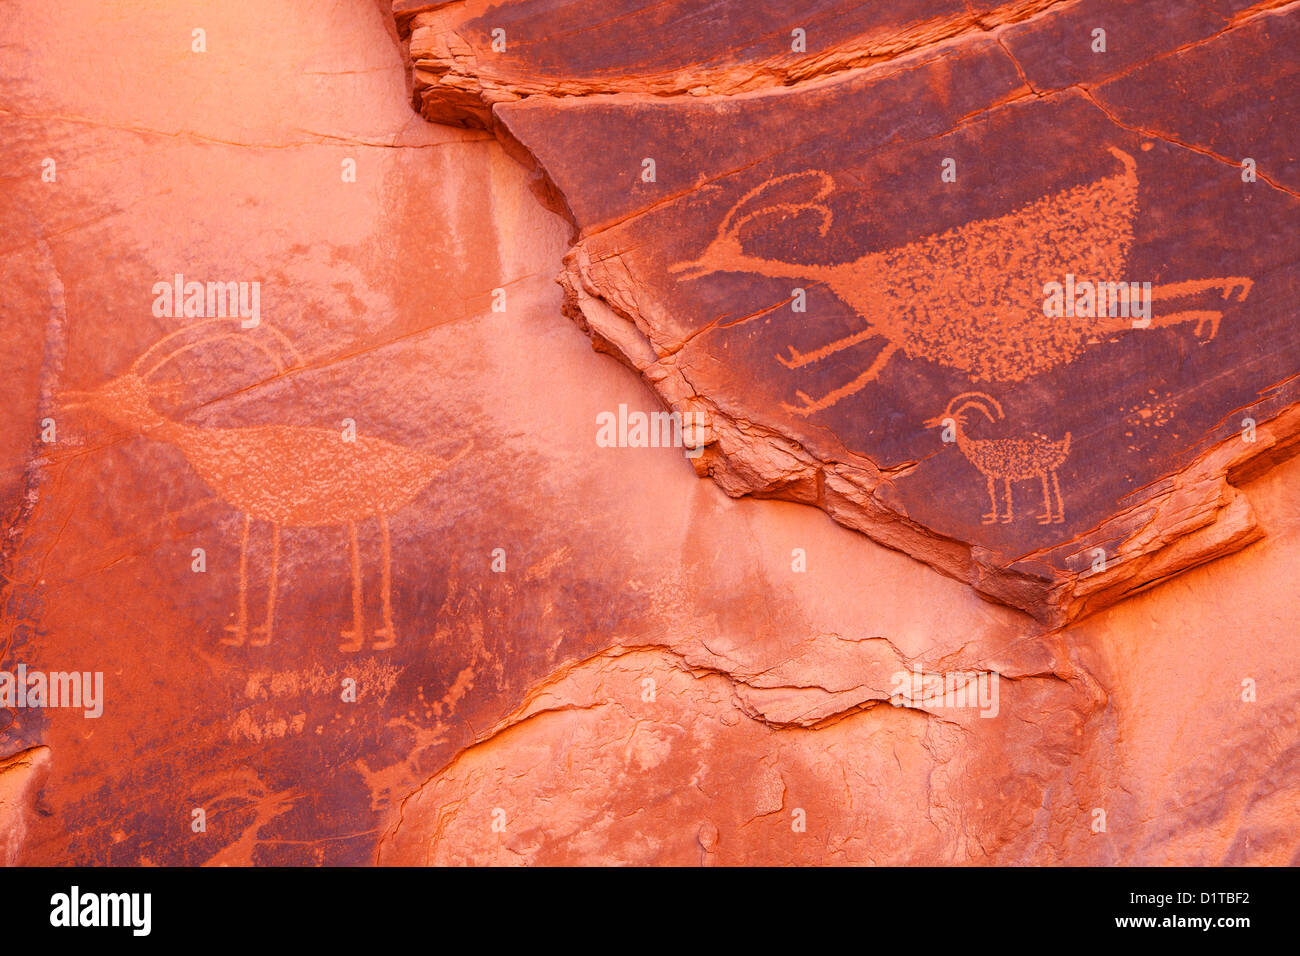 Incisioni rupestri in Monument Valley, Arizona, Stati Uniti d'America Foto Stock